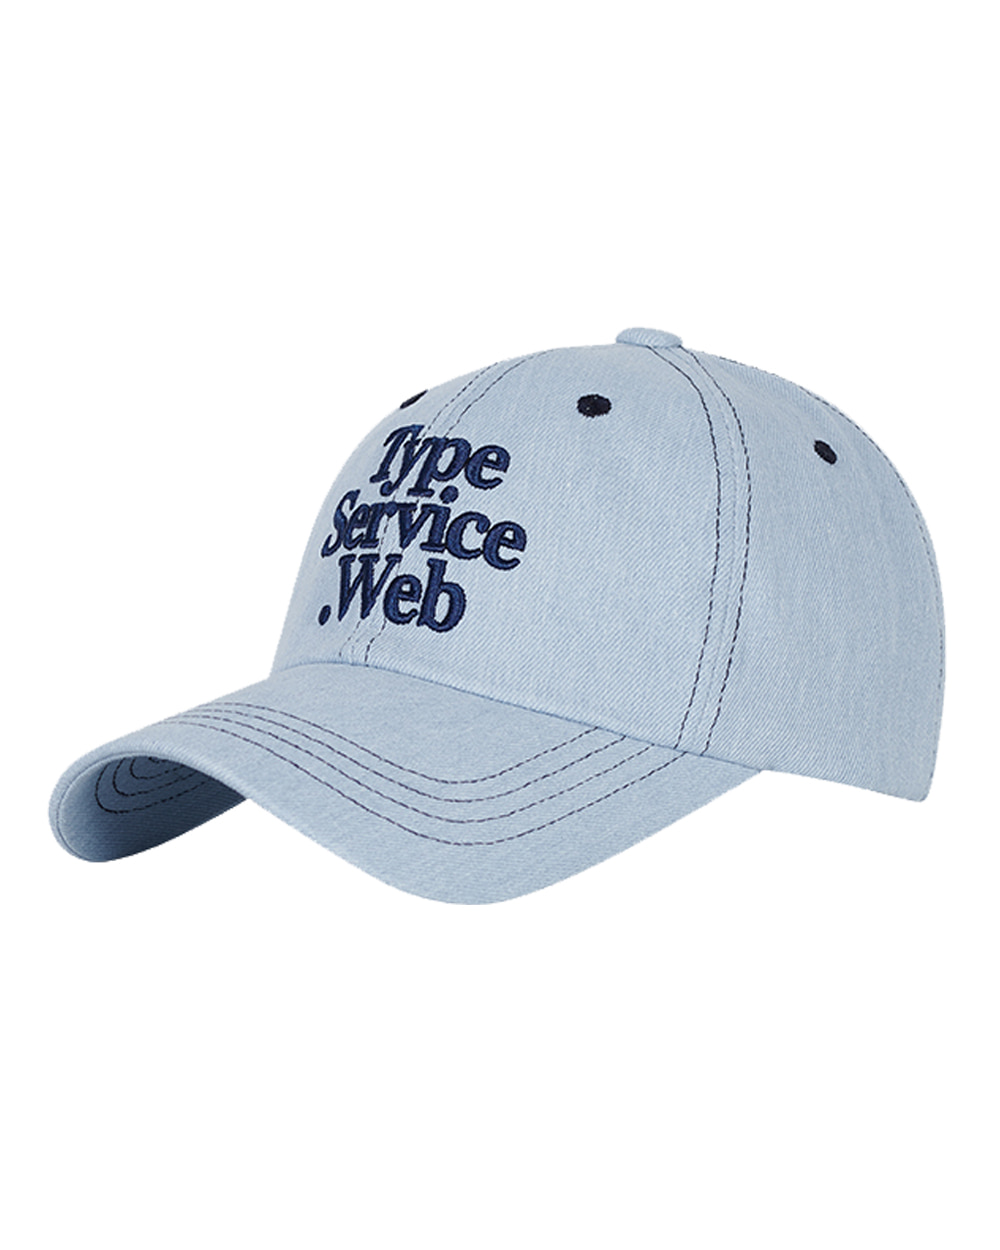 타입서비스 Typeservice Web Stitch Cap (Light Denim)